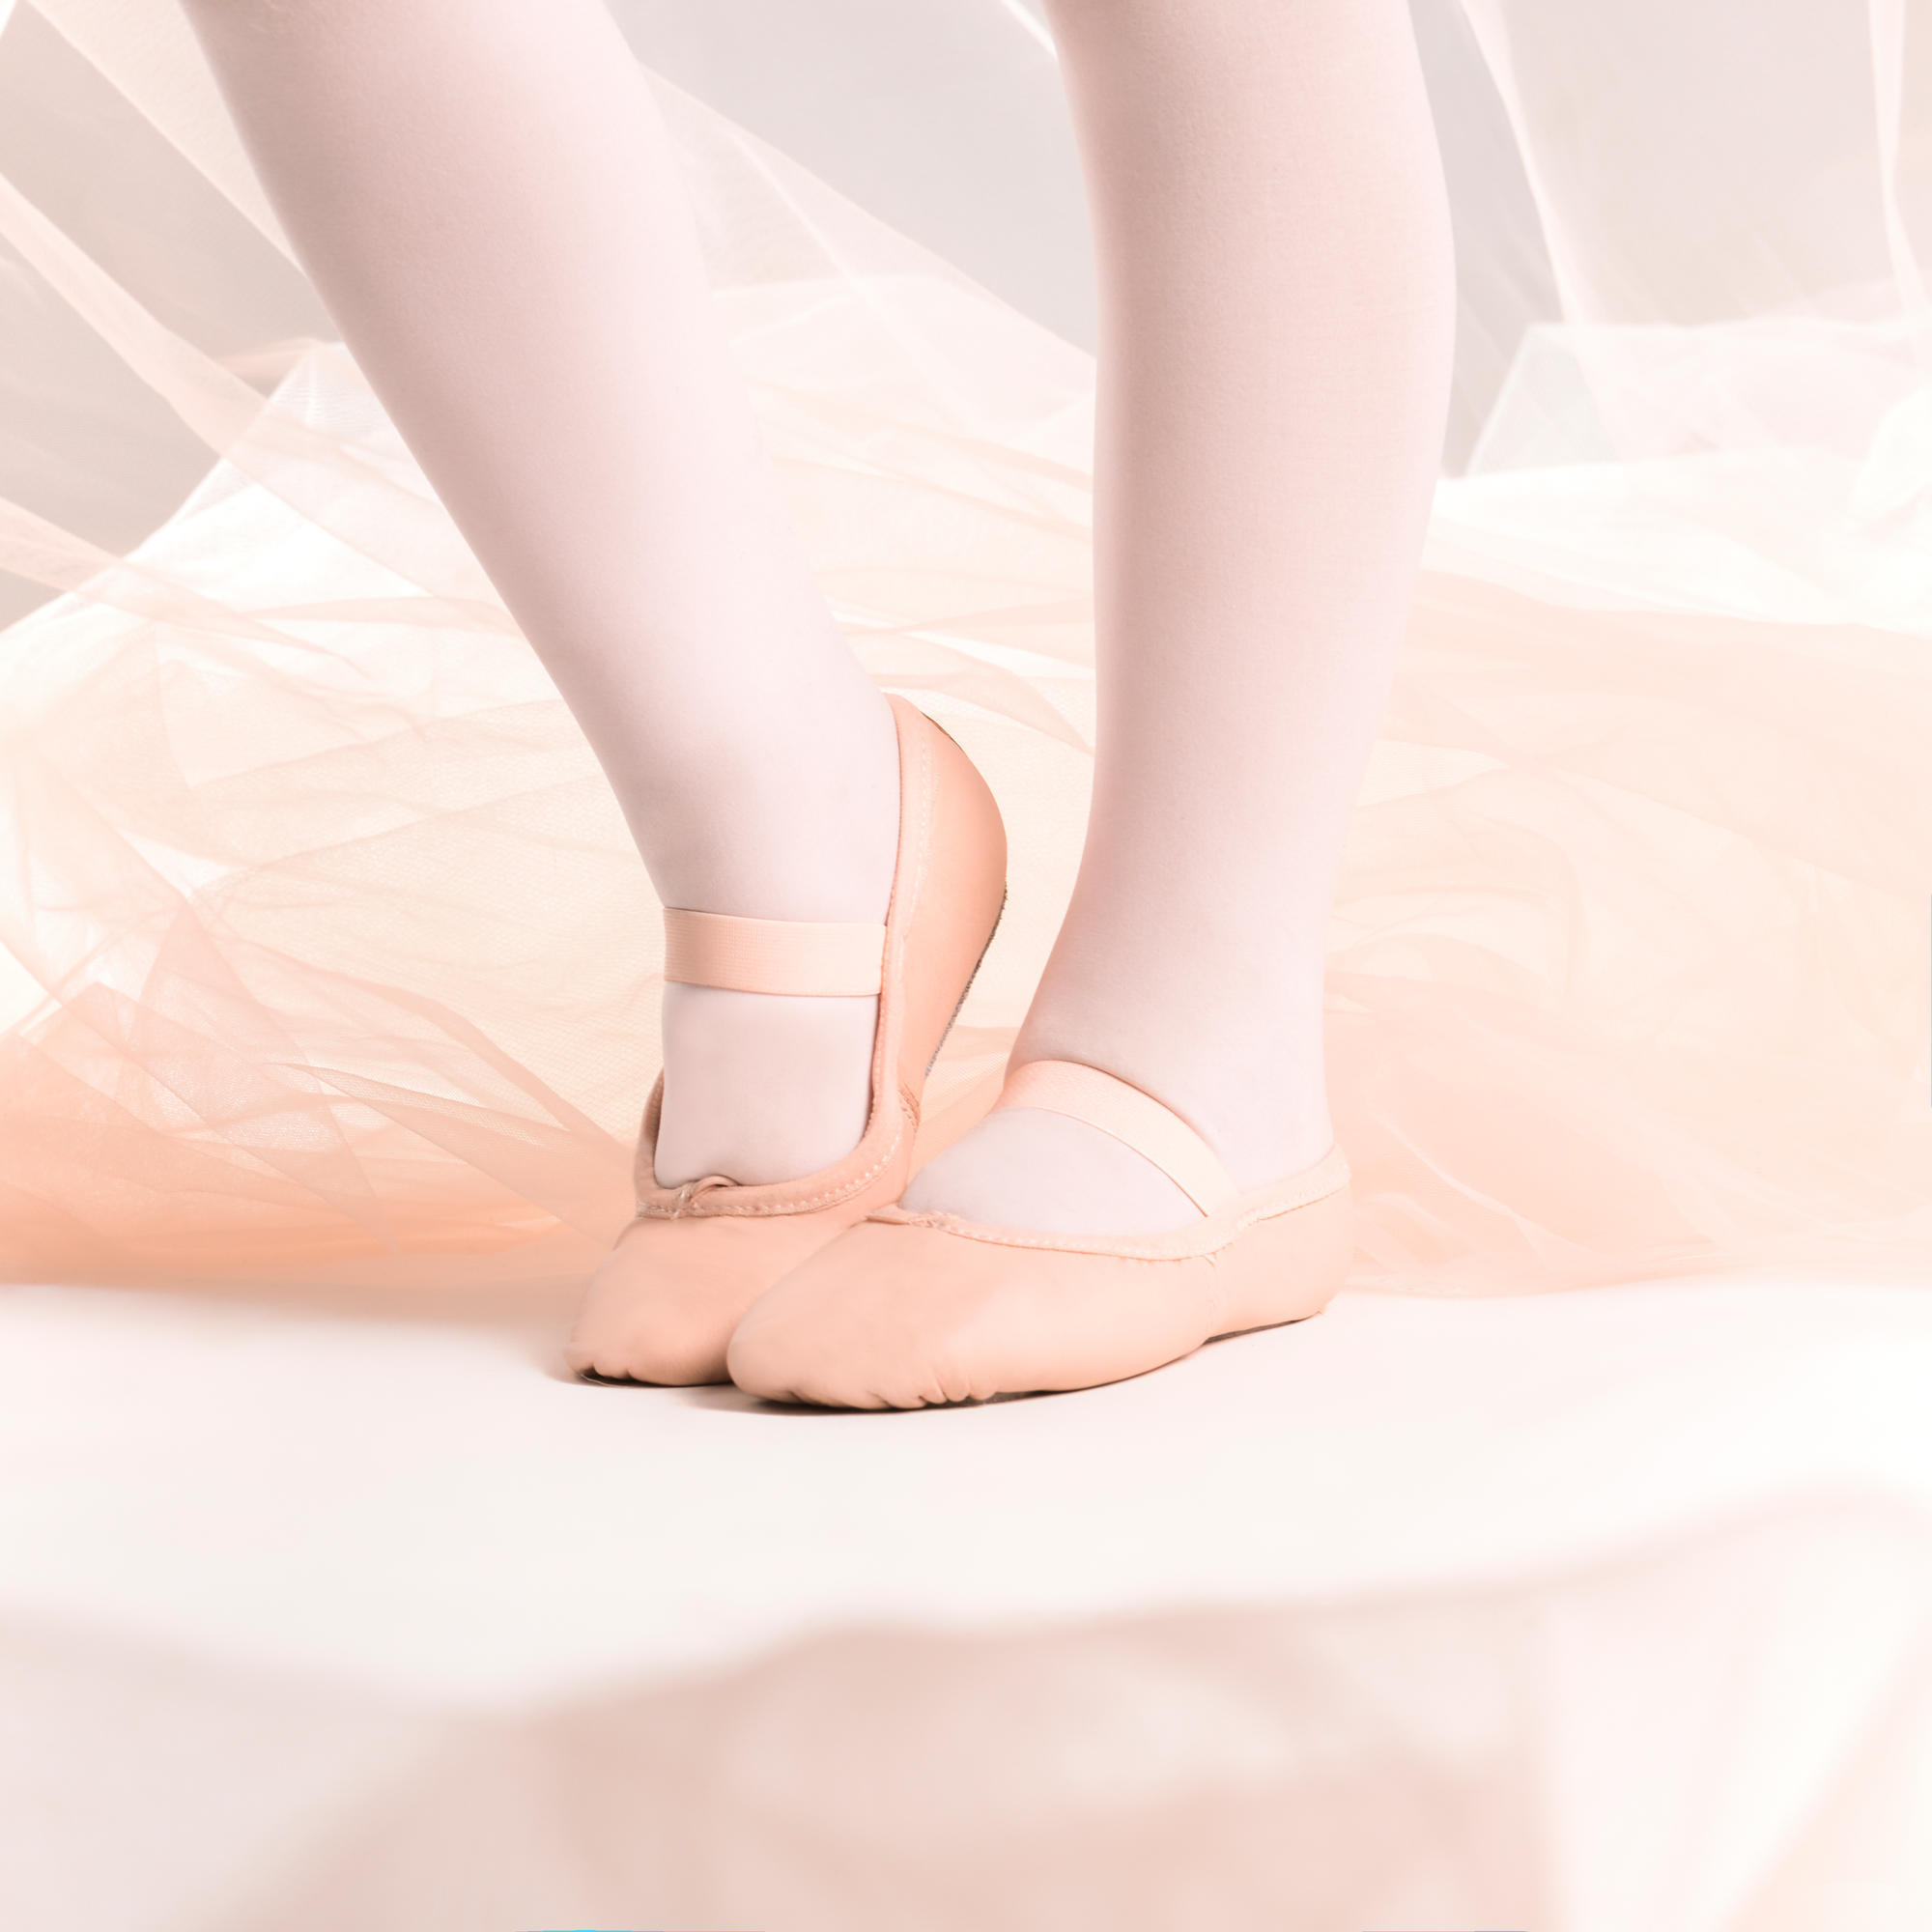 Demi-poante balet piele talpă întreagă mărimile 25-40 roz STAREVER decathlon.ro